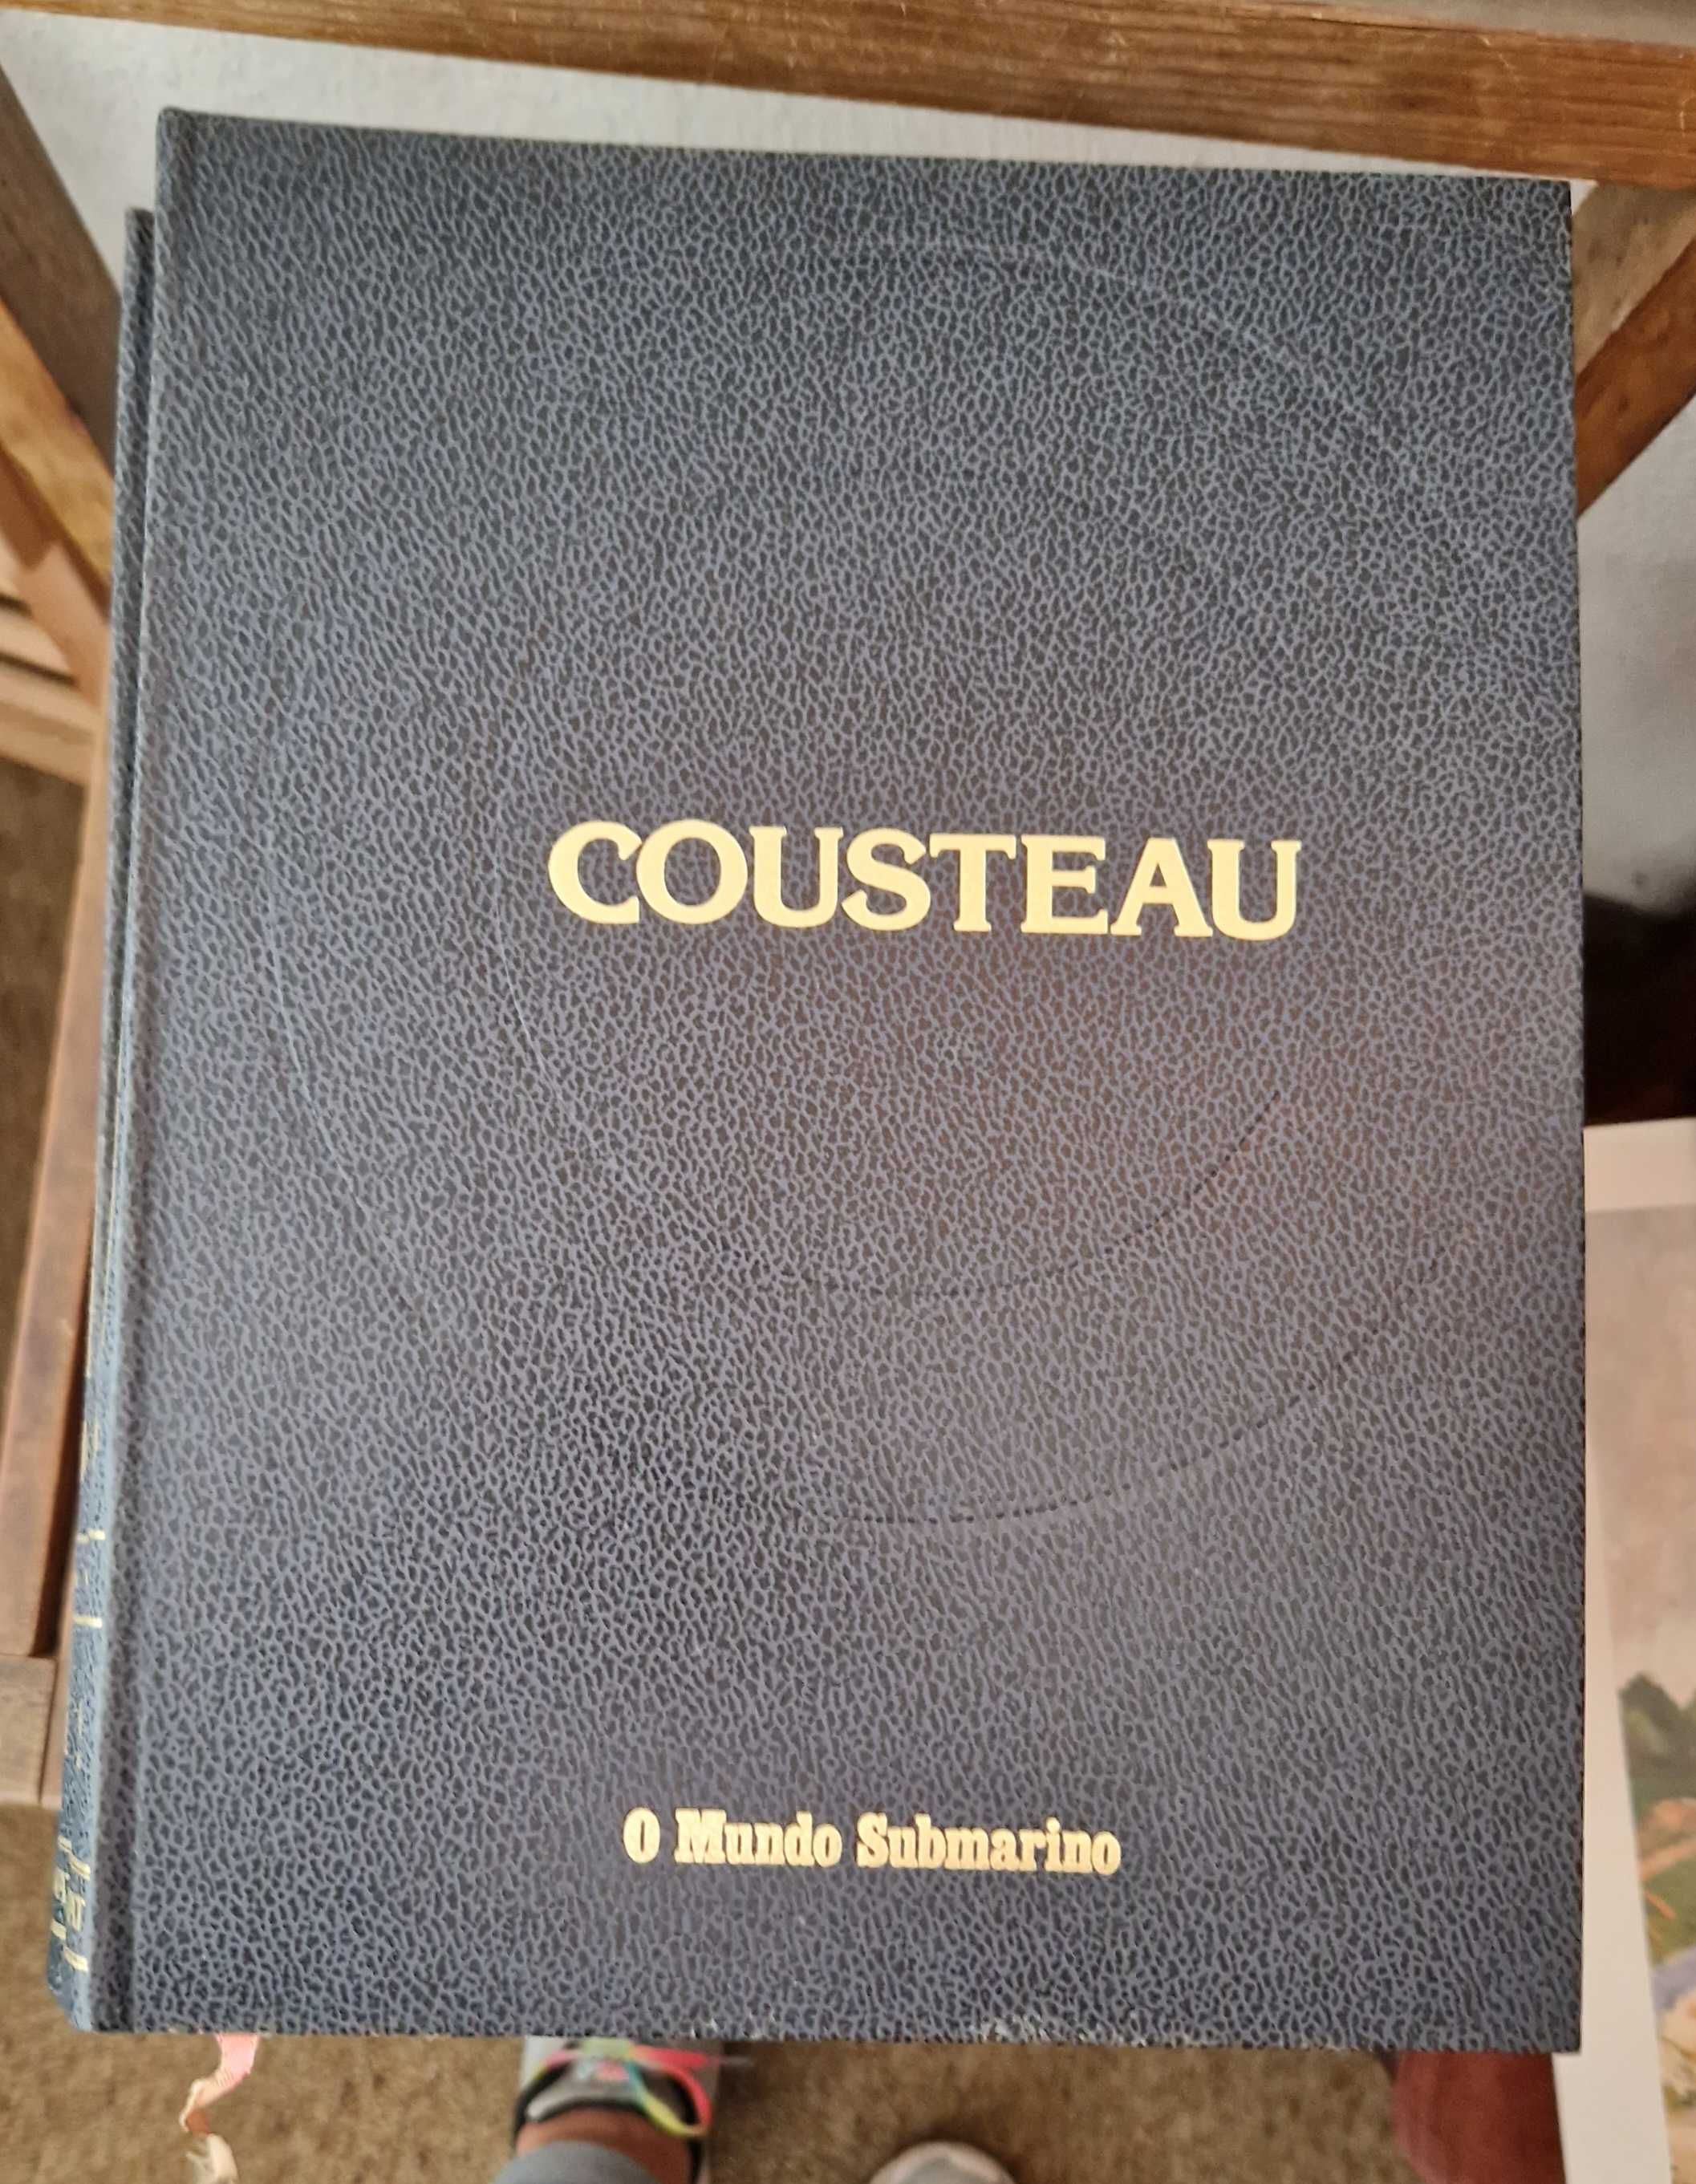 Enciclopédia "O mundo submarino " de Jacques Yves Cousteau